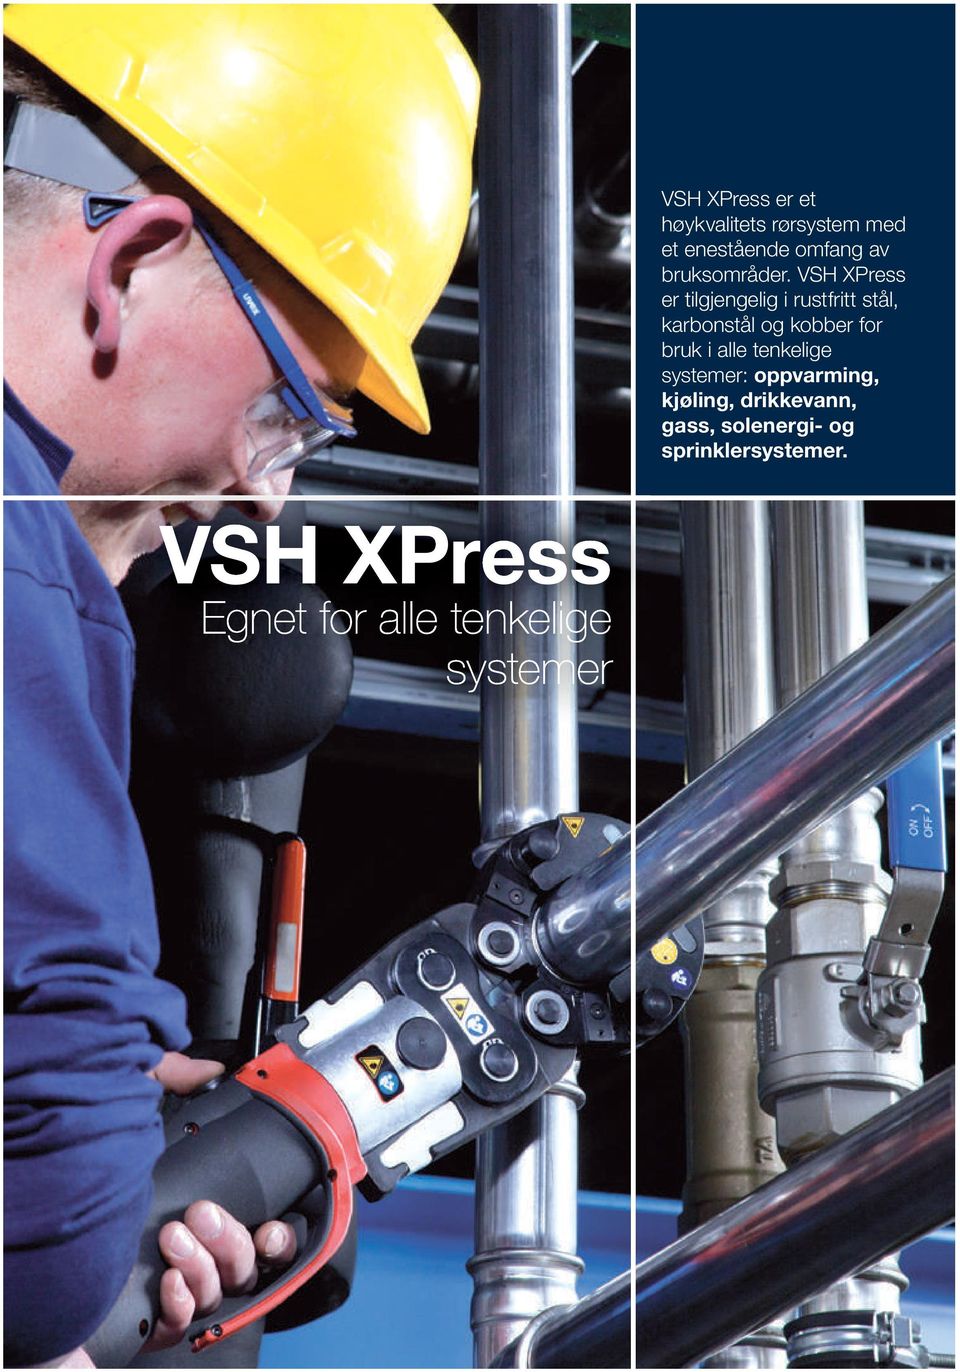 VSH XPress er tilgjengelig i rustfritt stål, karbonstål og kobber for bruk